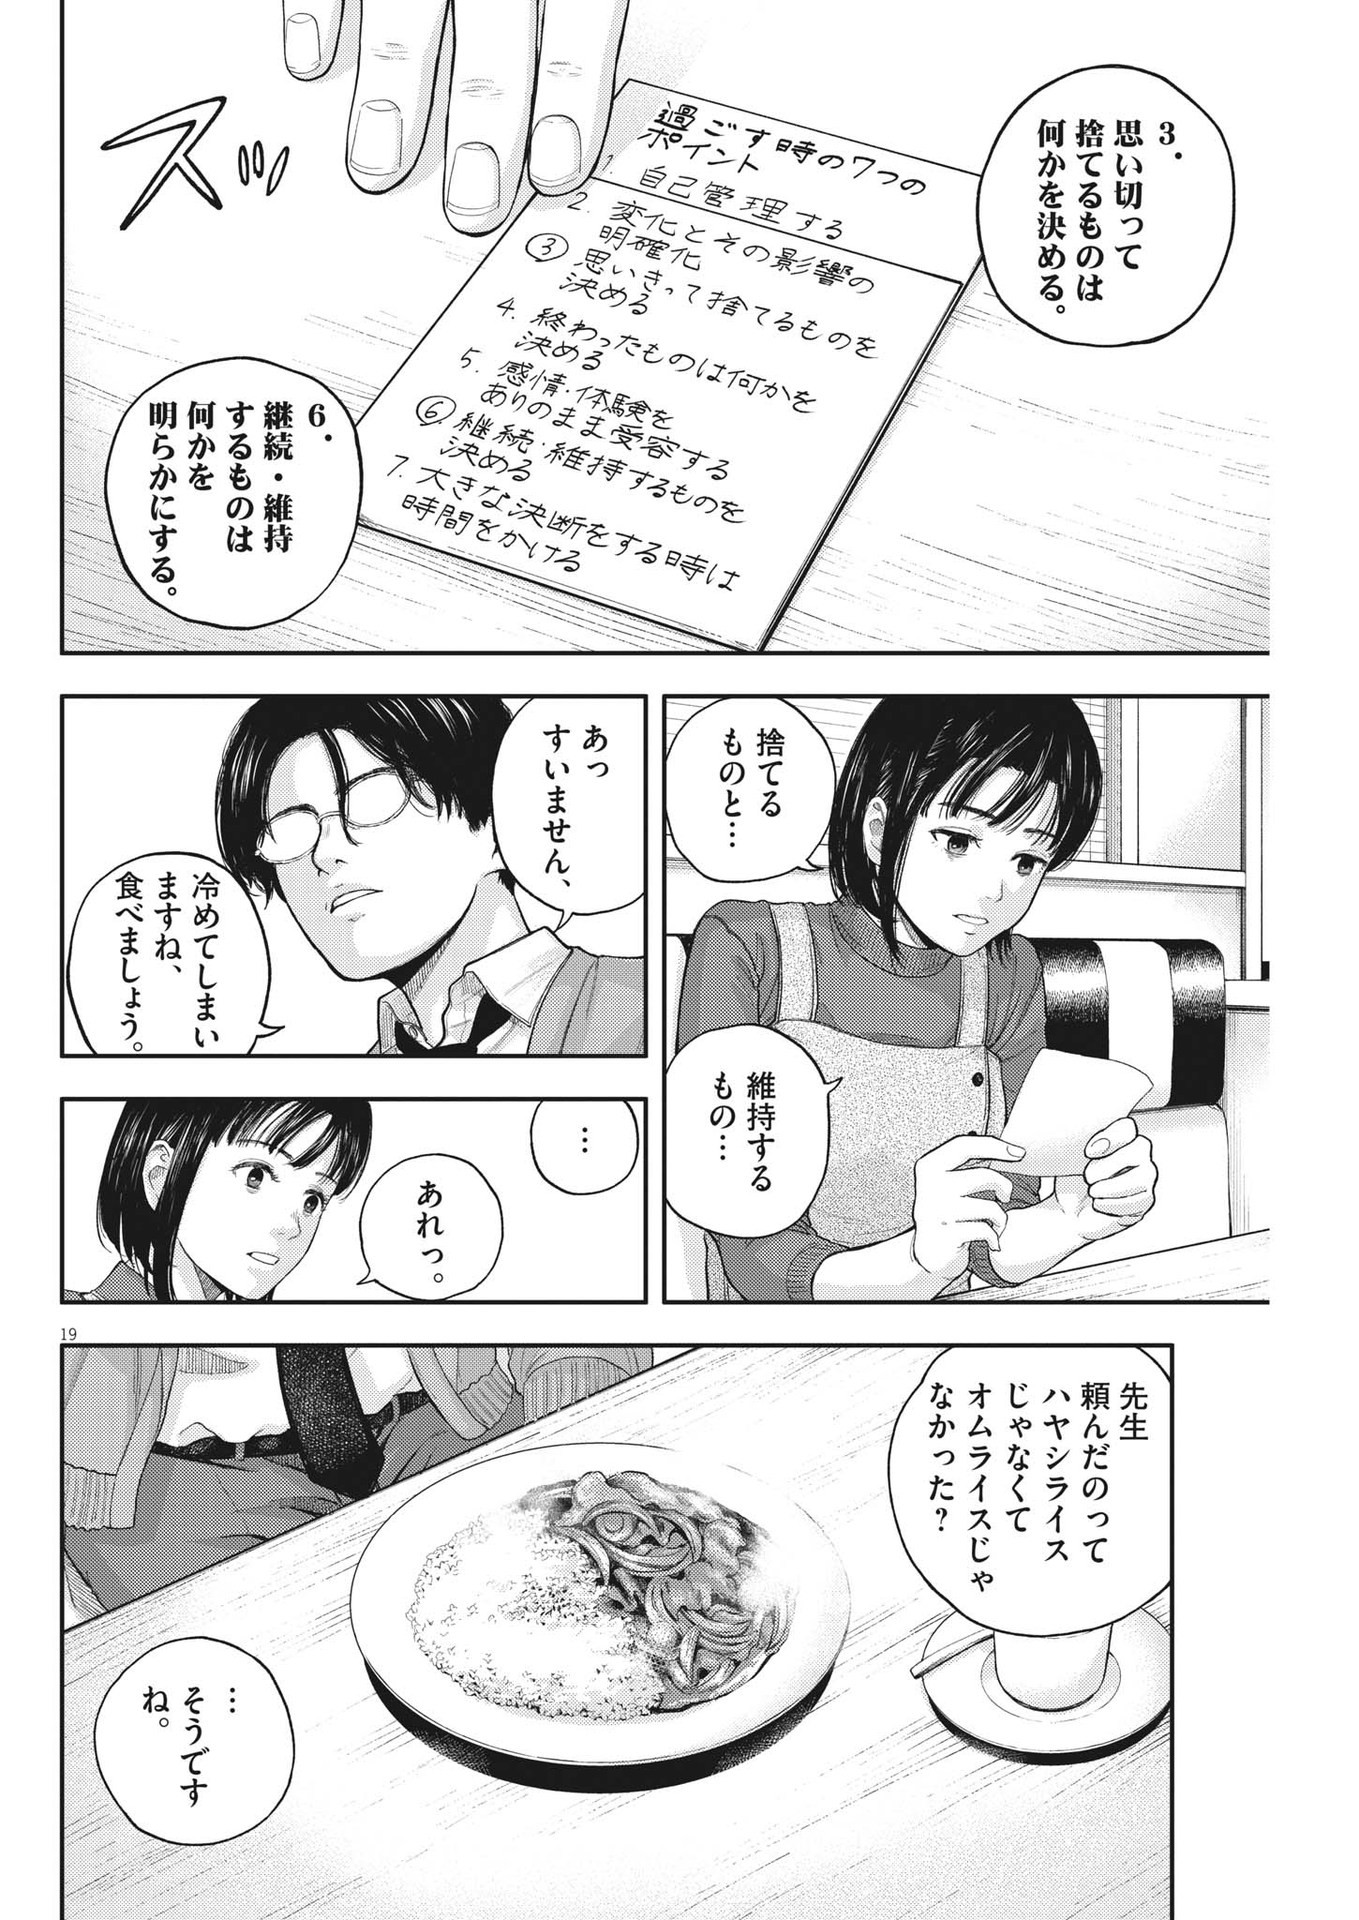 Yumenashi-sensei no Shinroshidou - Chapter 2 - Page 19